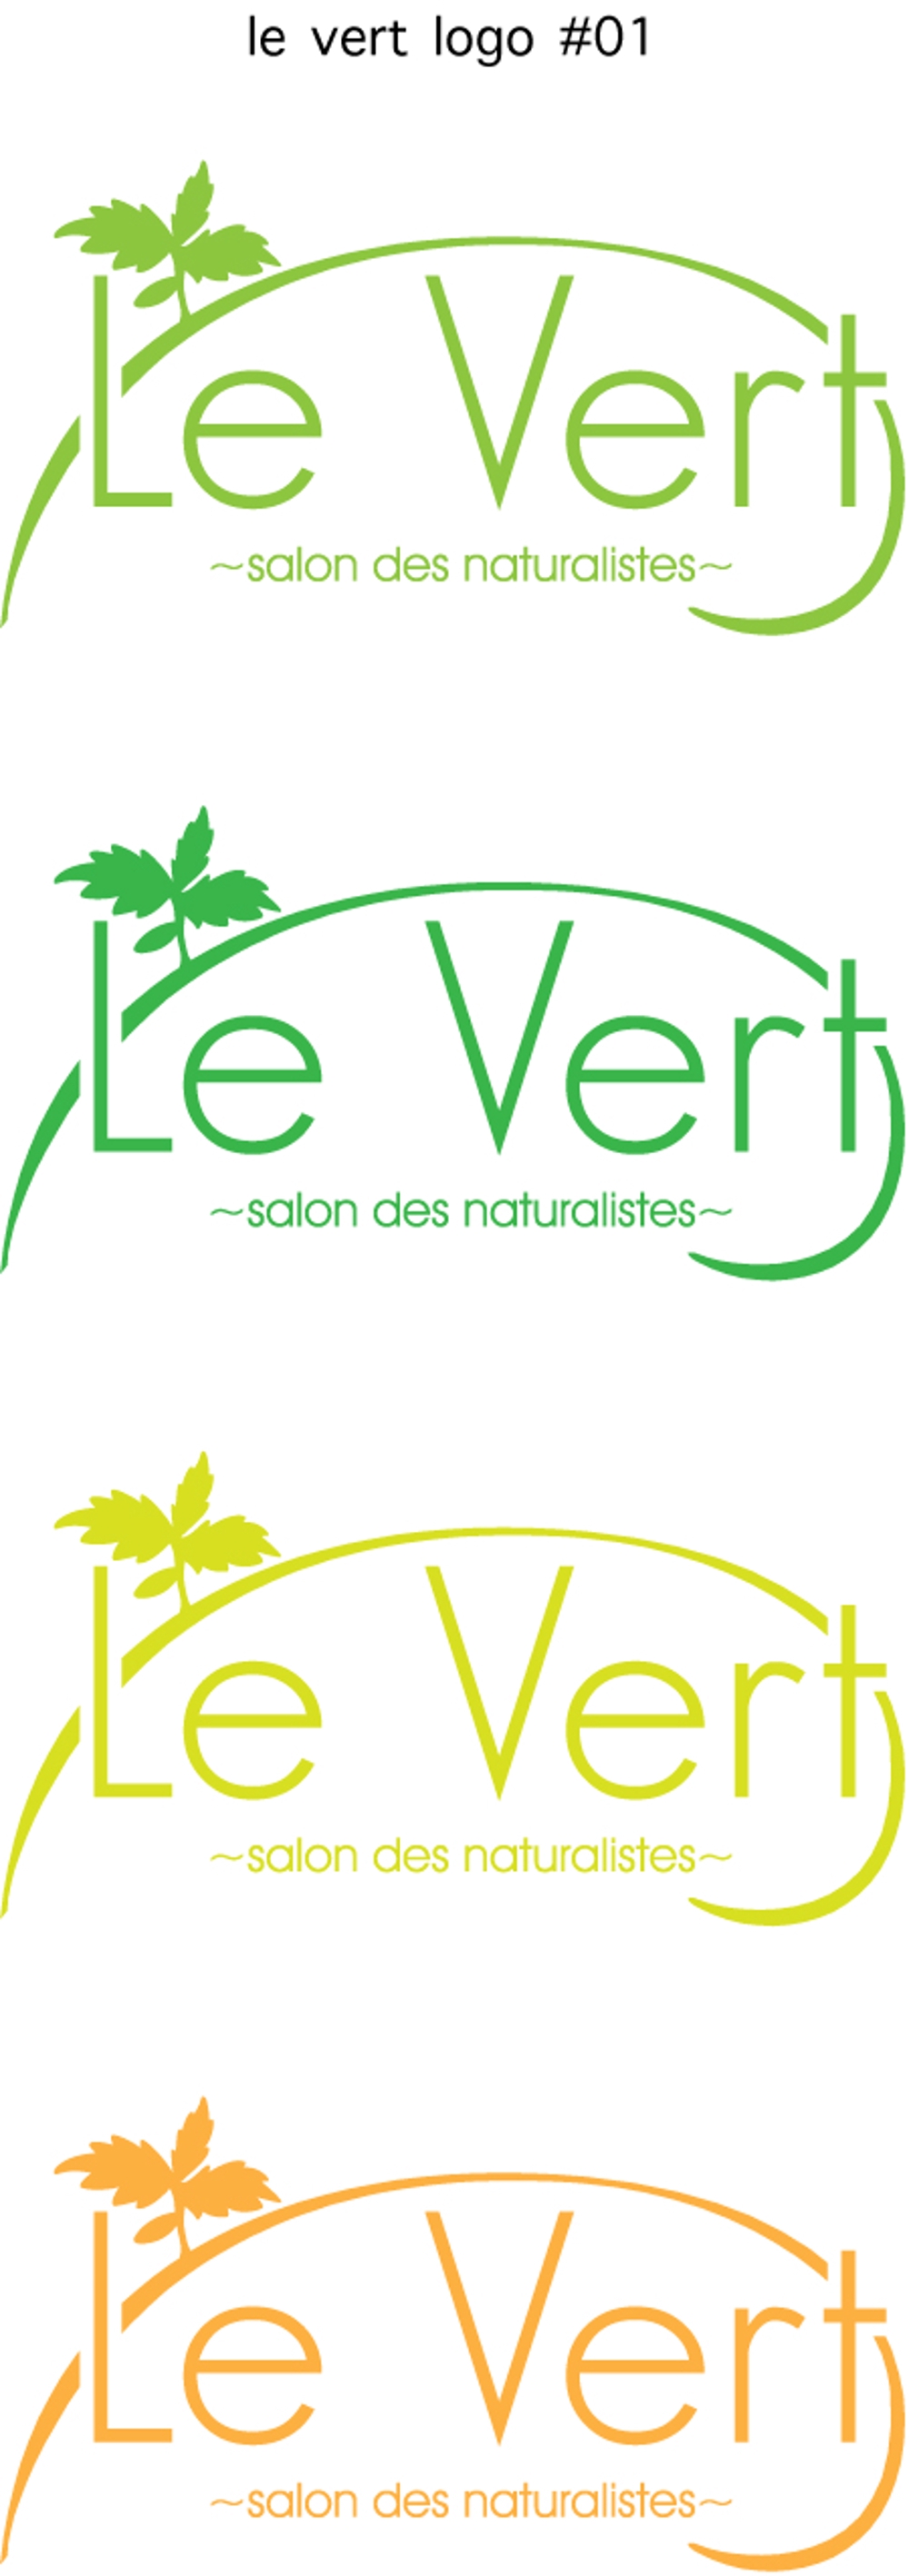 le_vert_logo_01.jpg